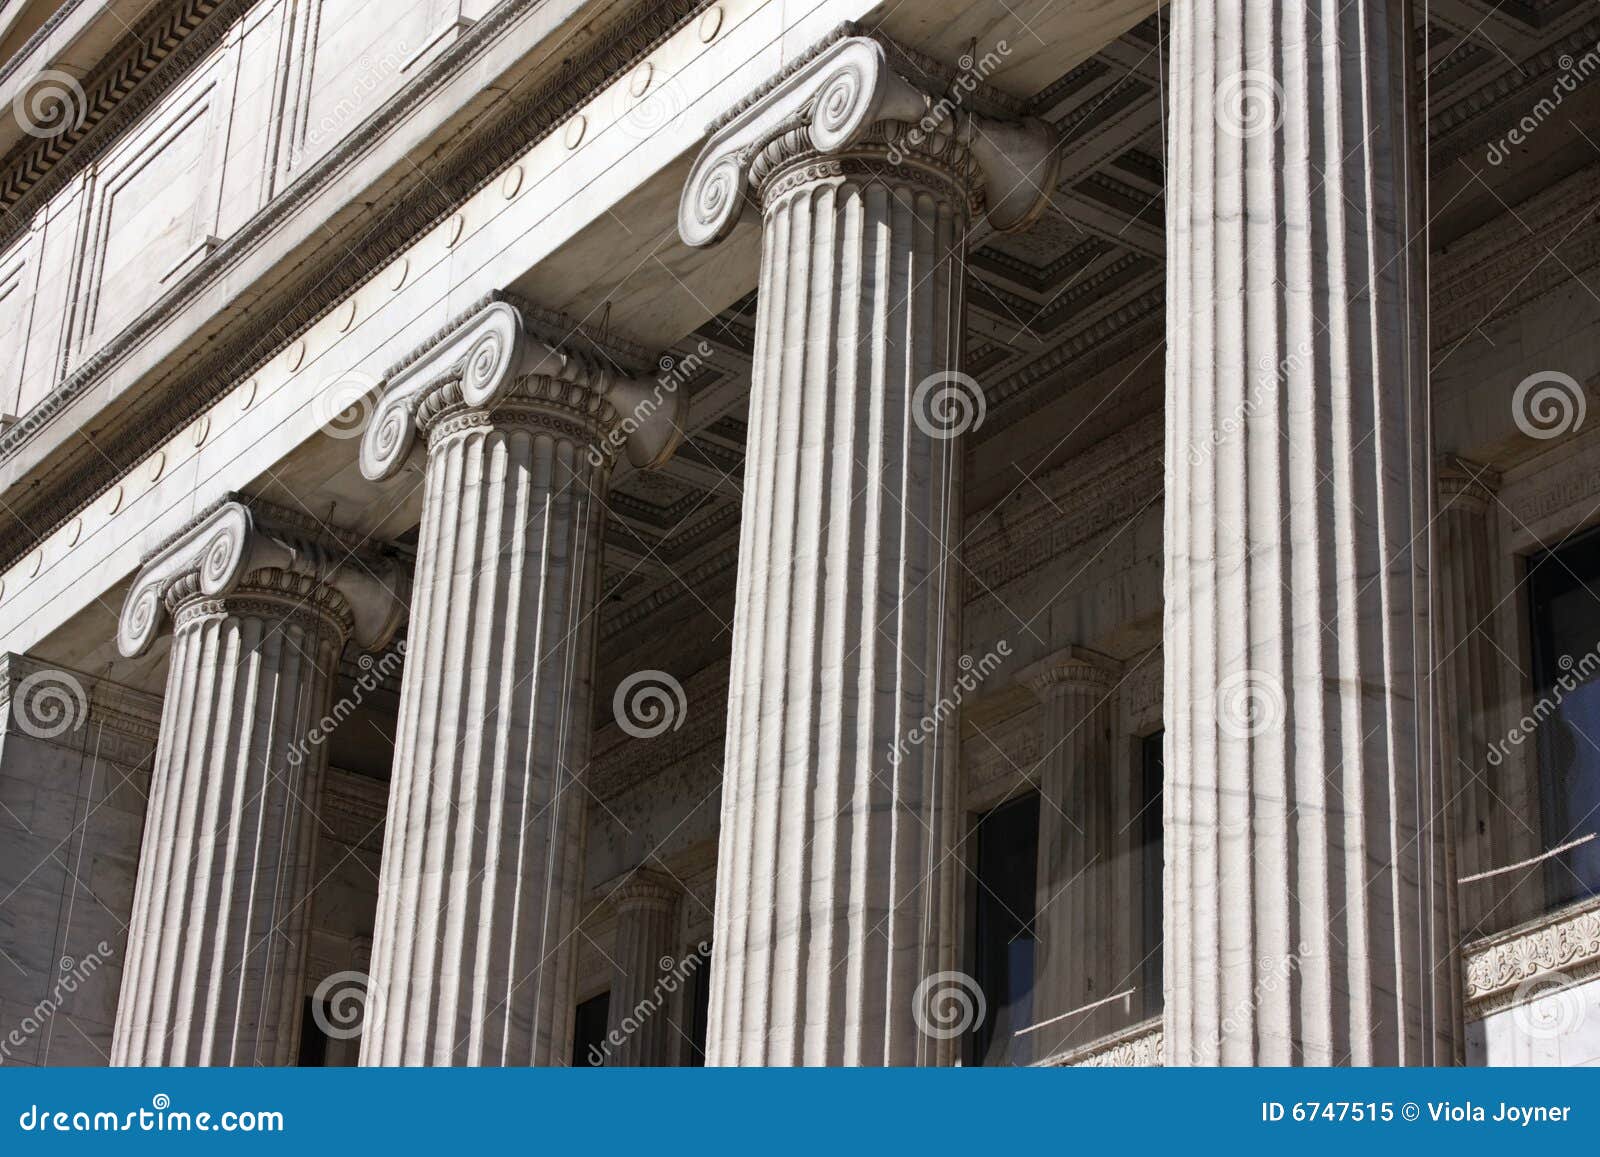 museum columns